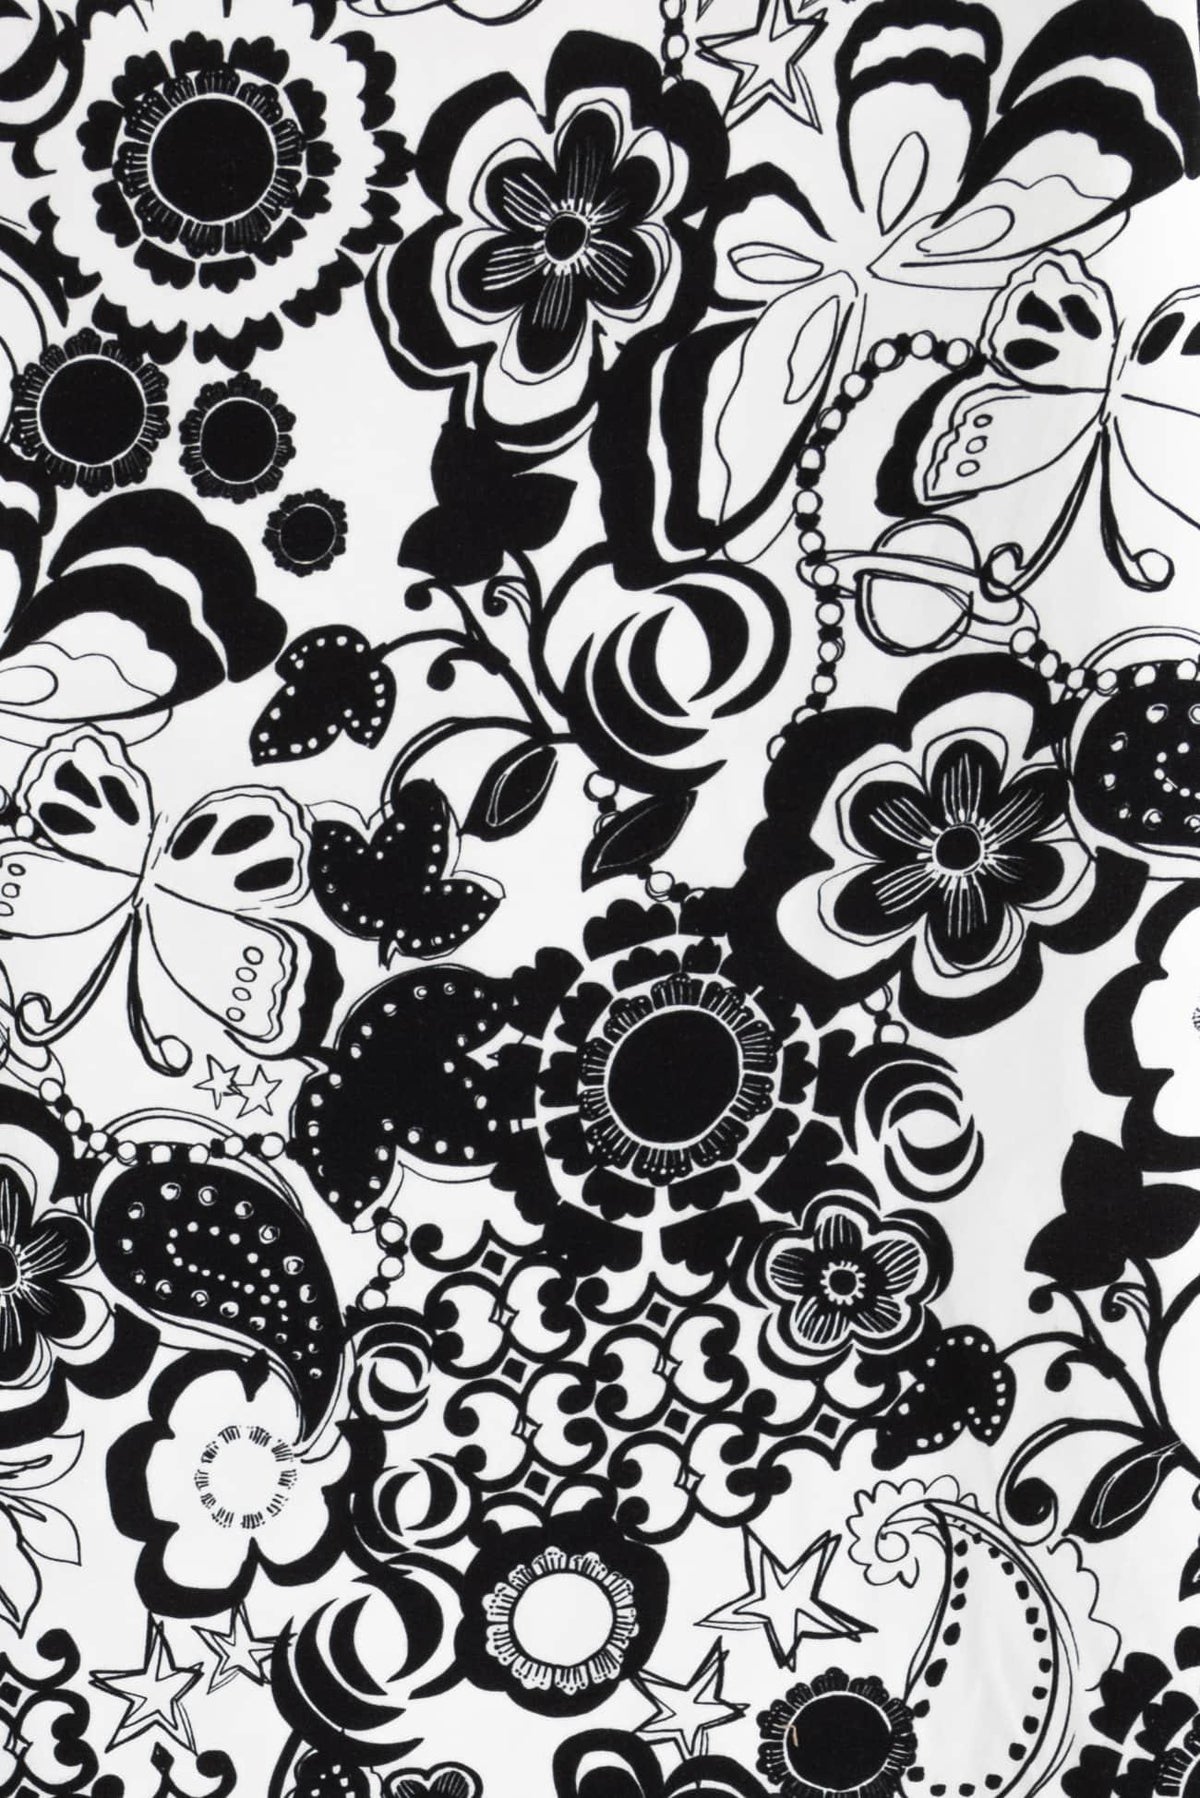 Butterflies Of Love Italian Cotton Woven - Marcy Tilton Fabrics